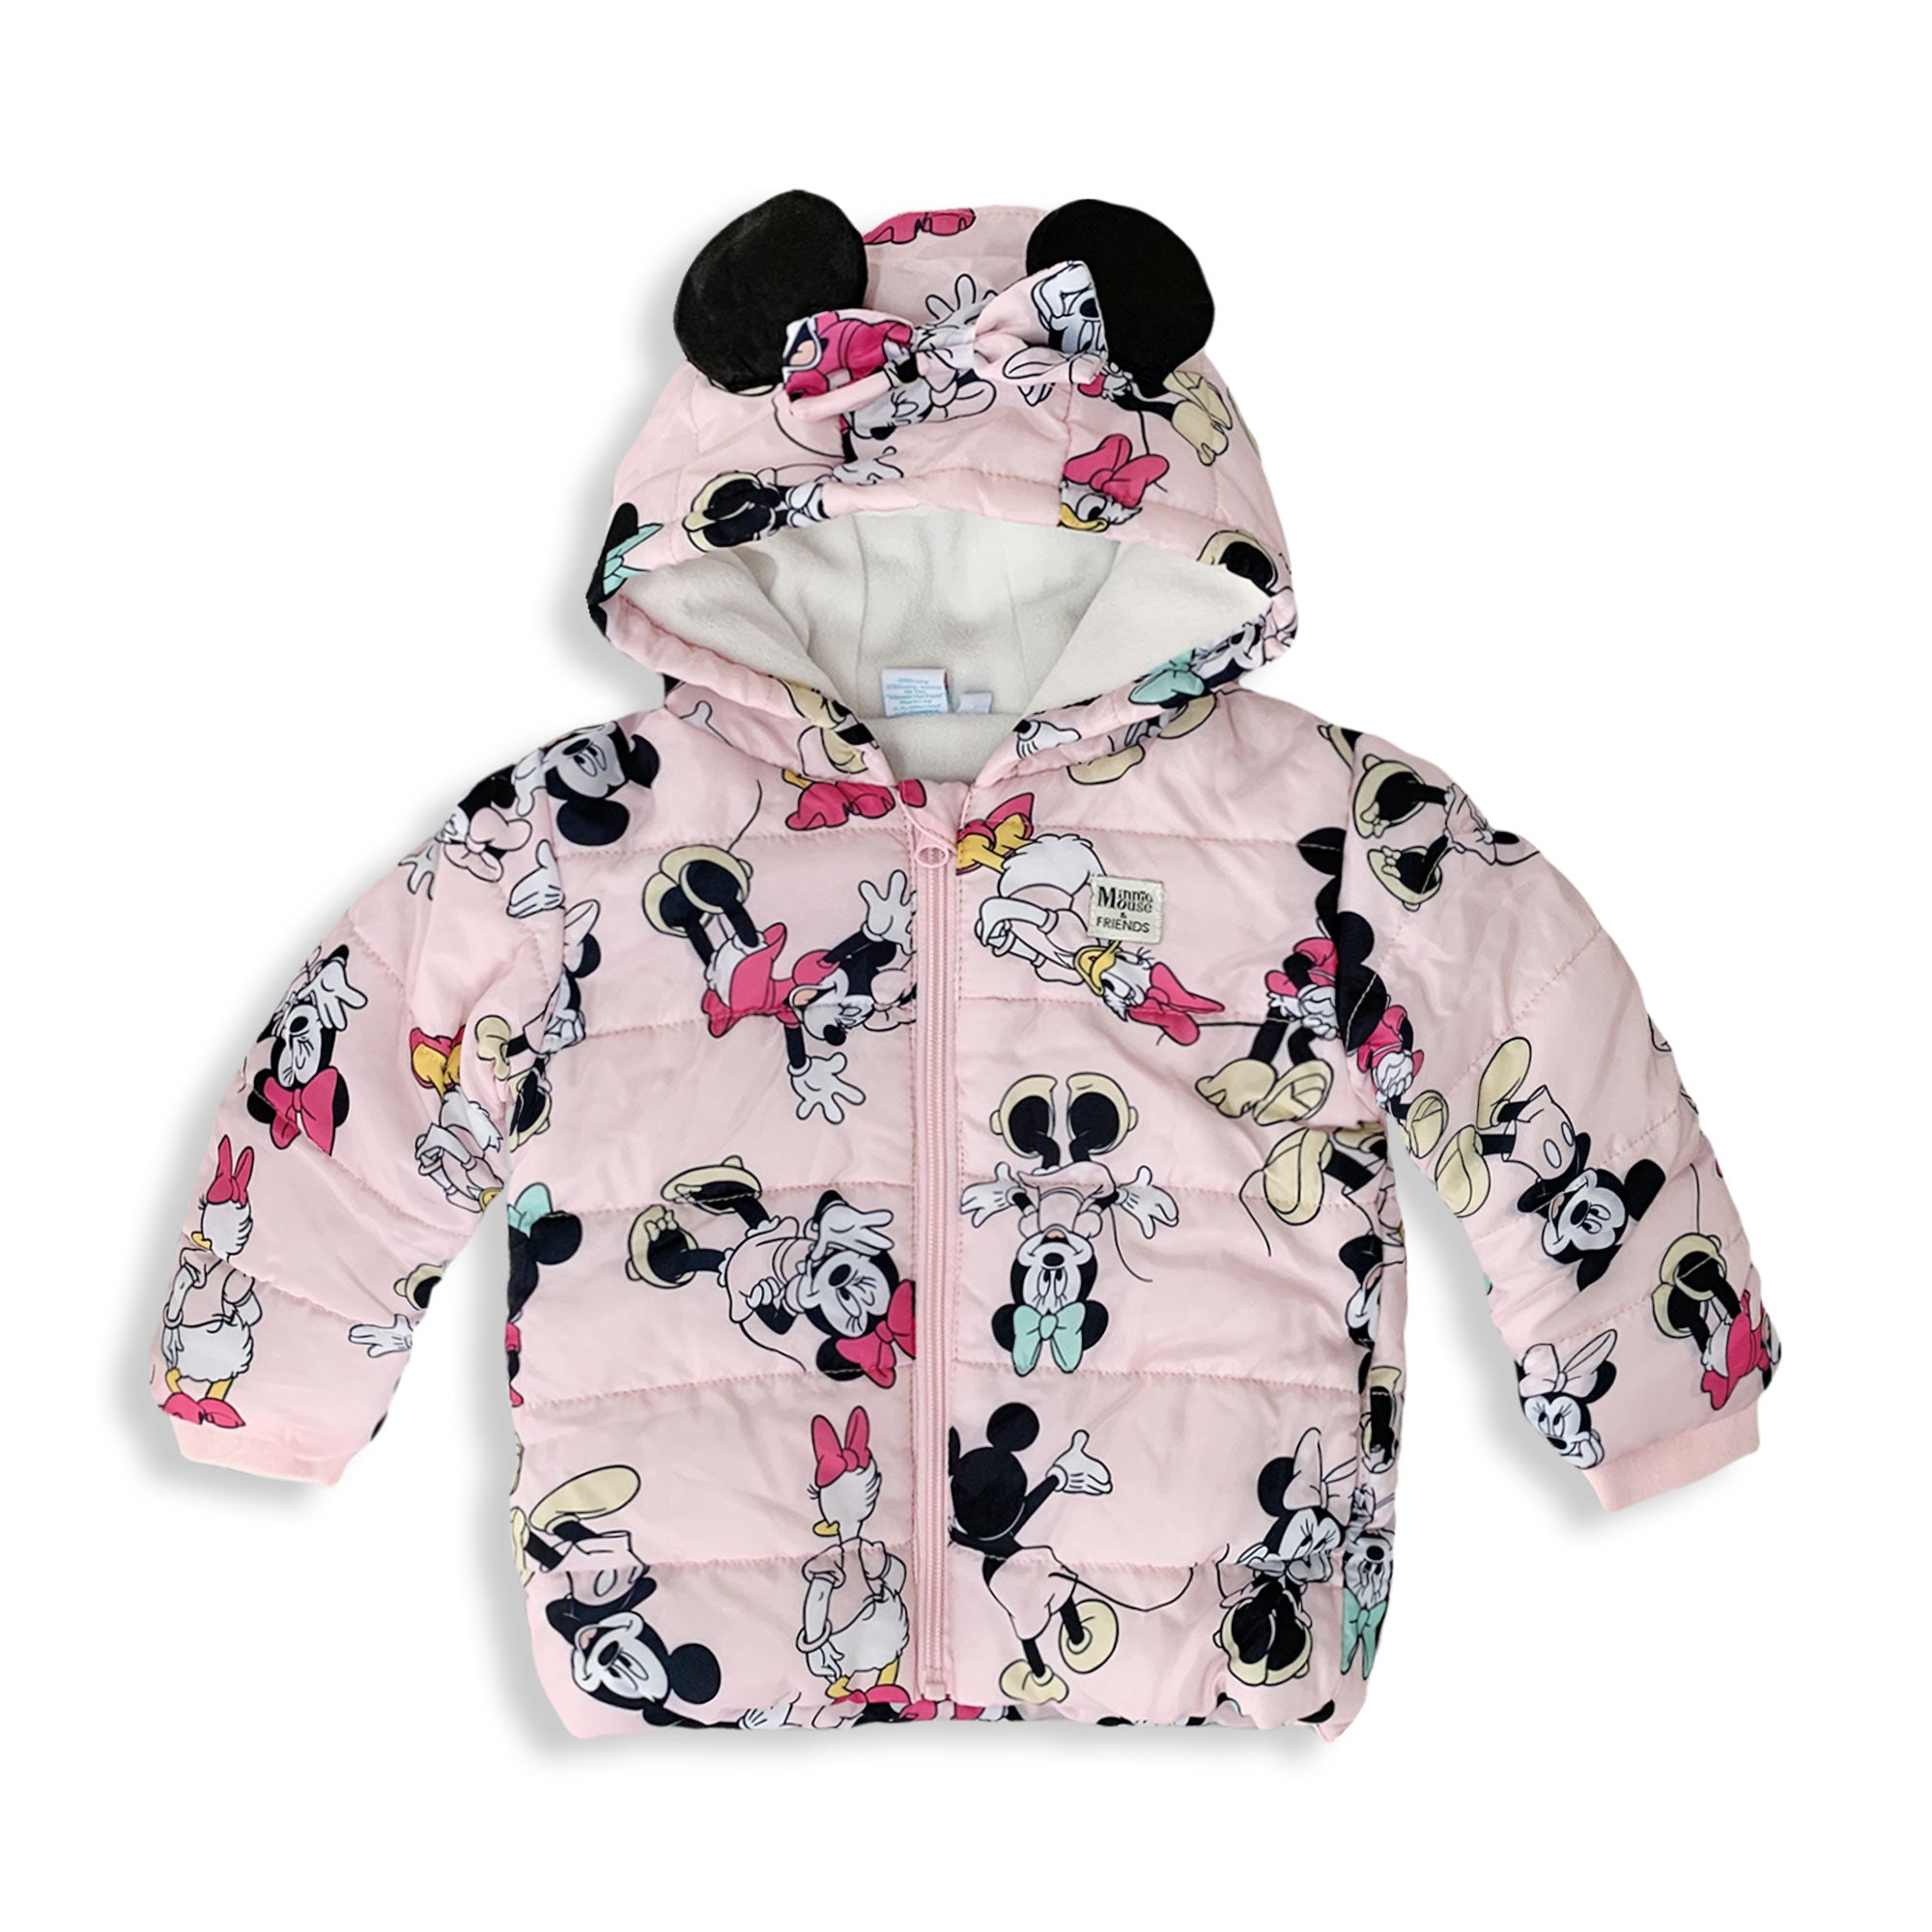 Giubbotto neonato invernale Disney Minnie Mouse Bimba con cappuccio 5892